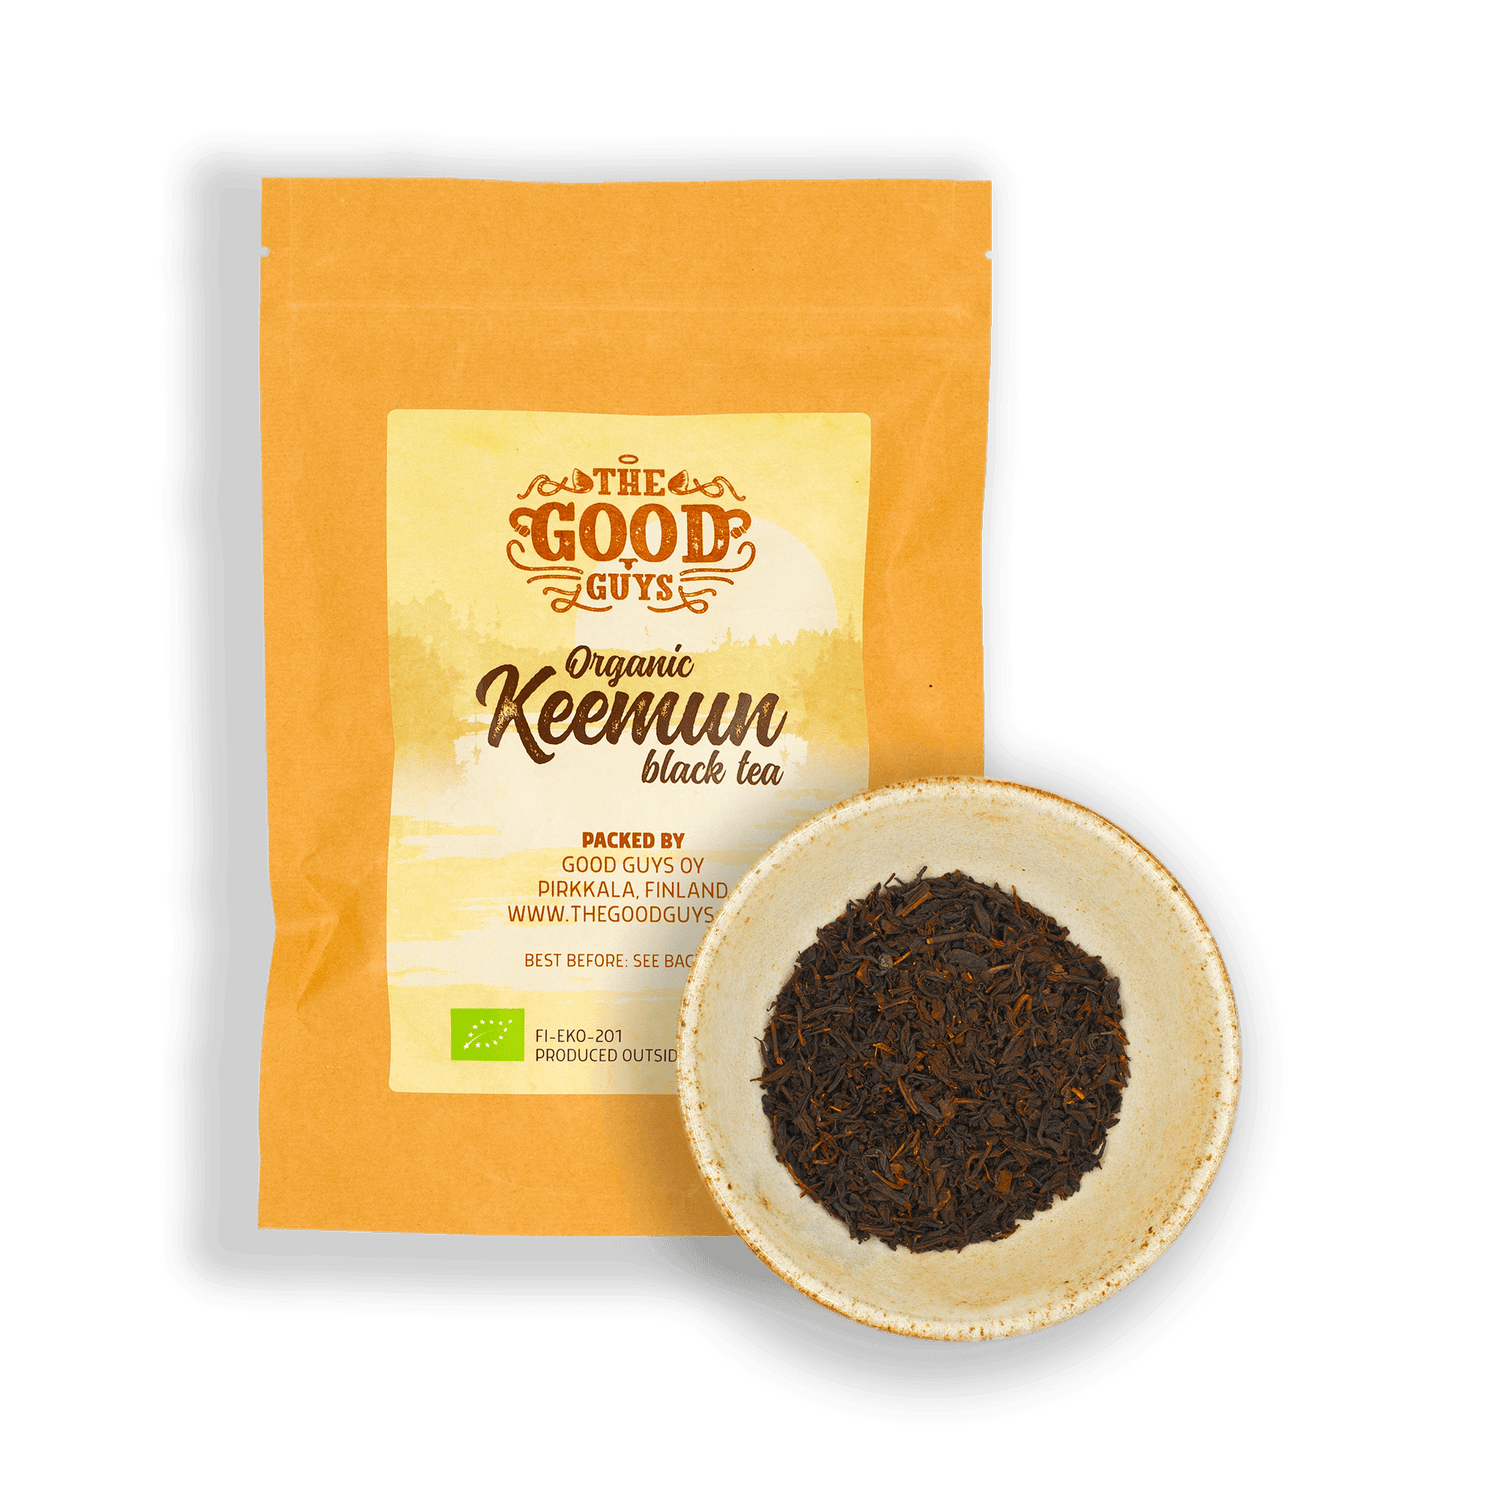 Keemun - black tea, organic